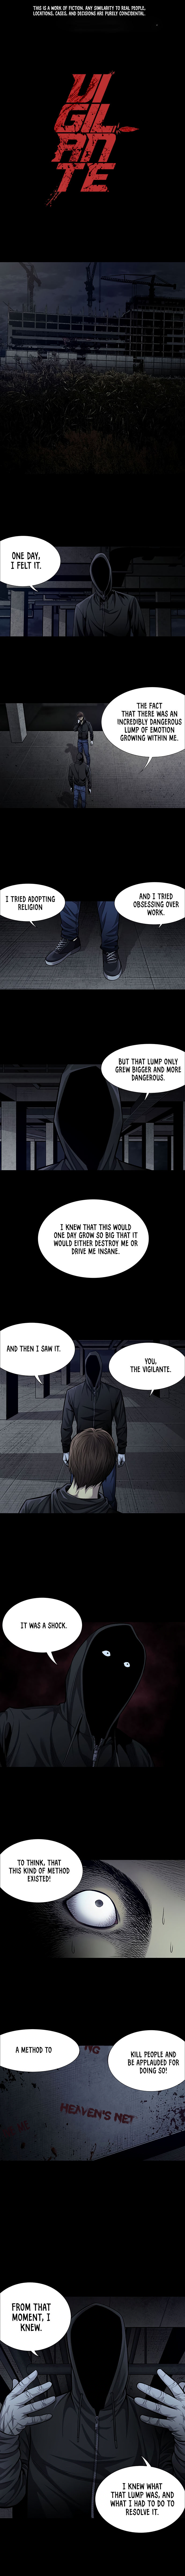 Vigilante - Chapter 42 Page 1